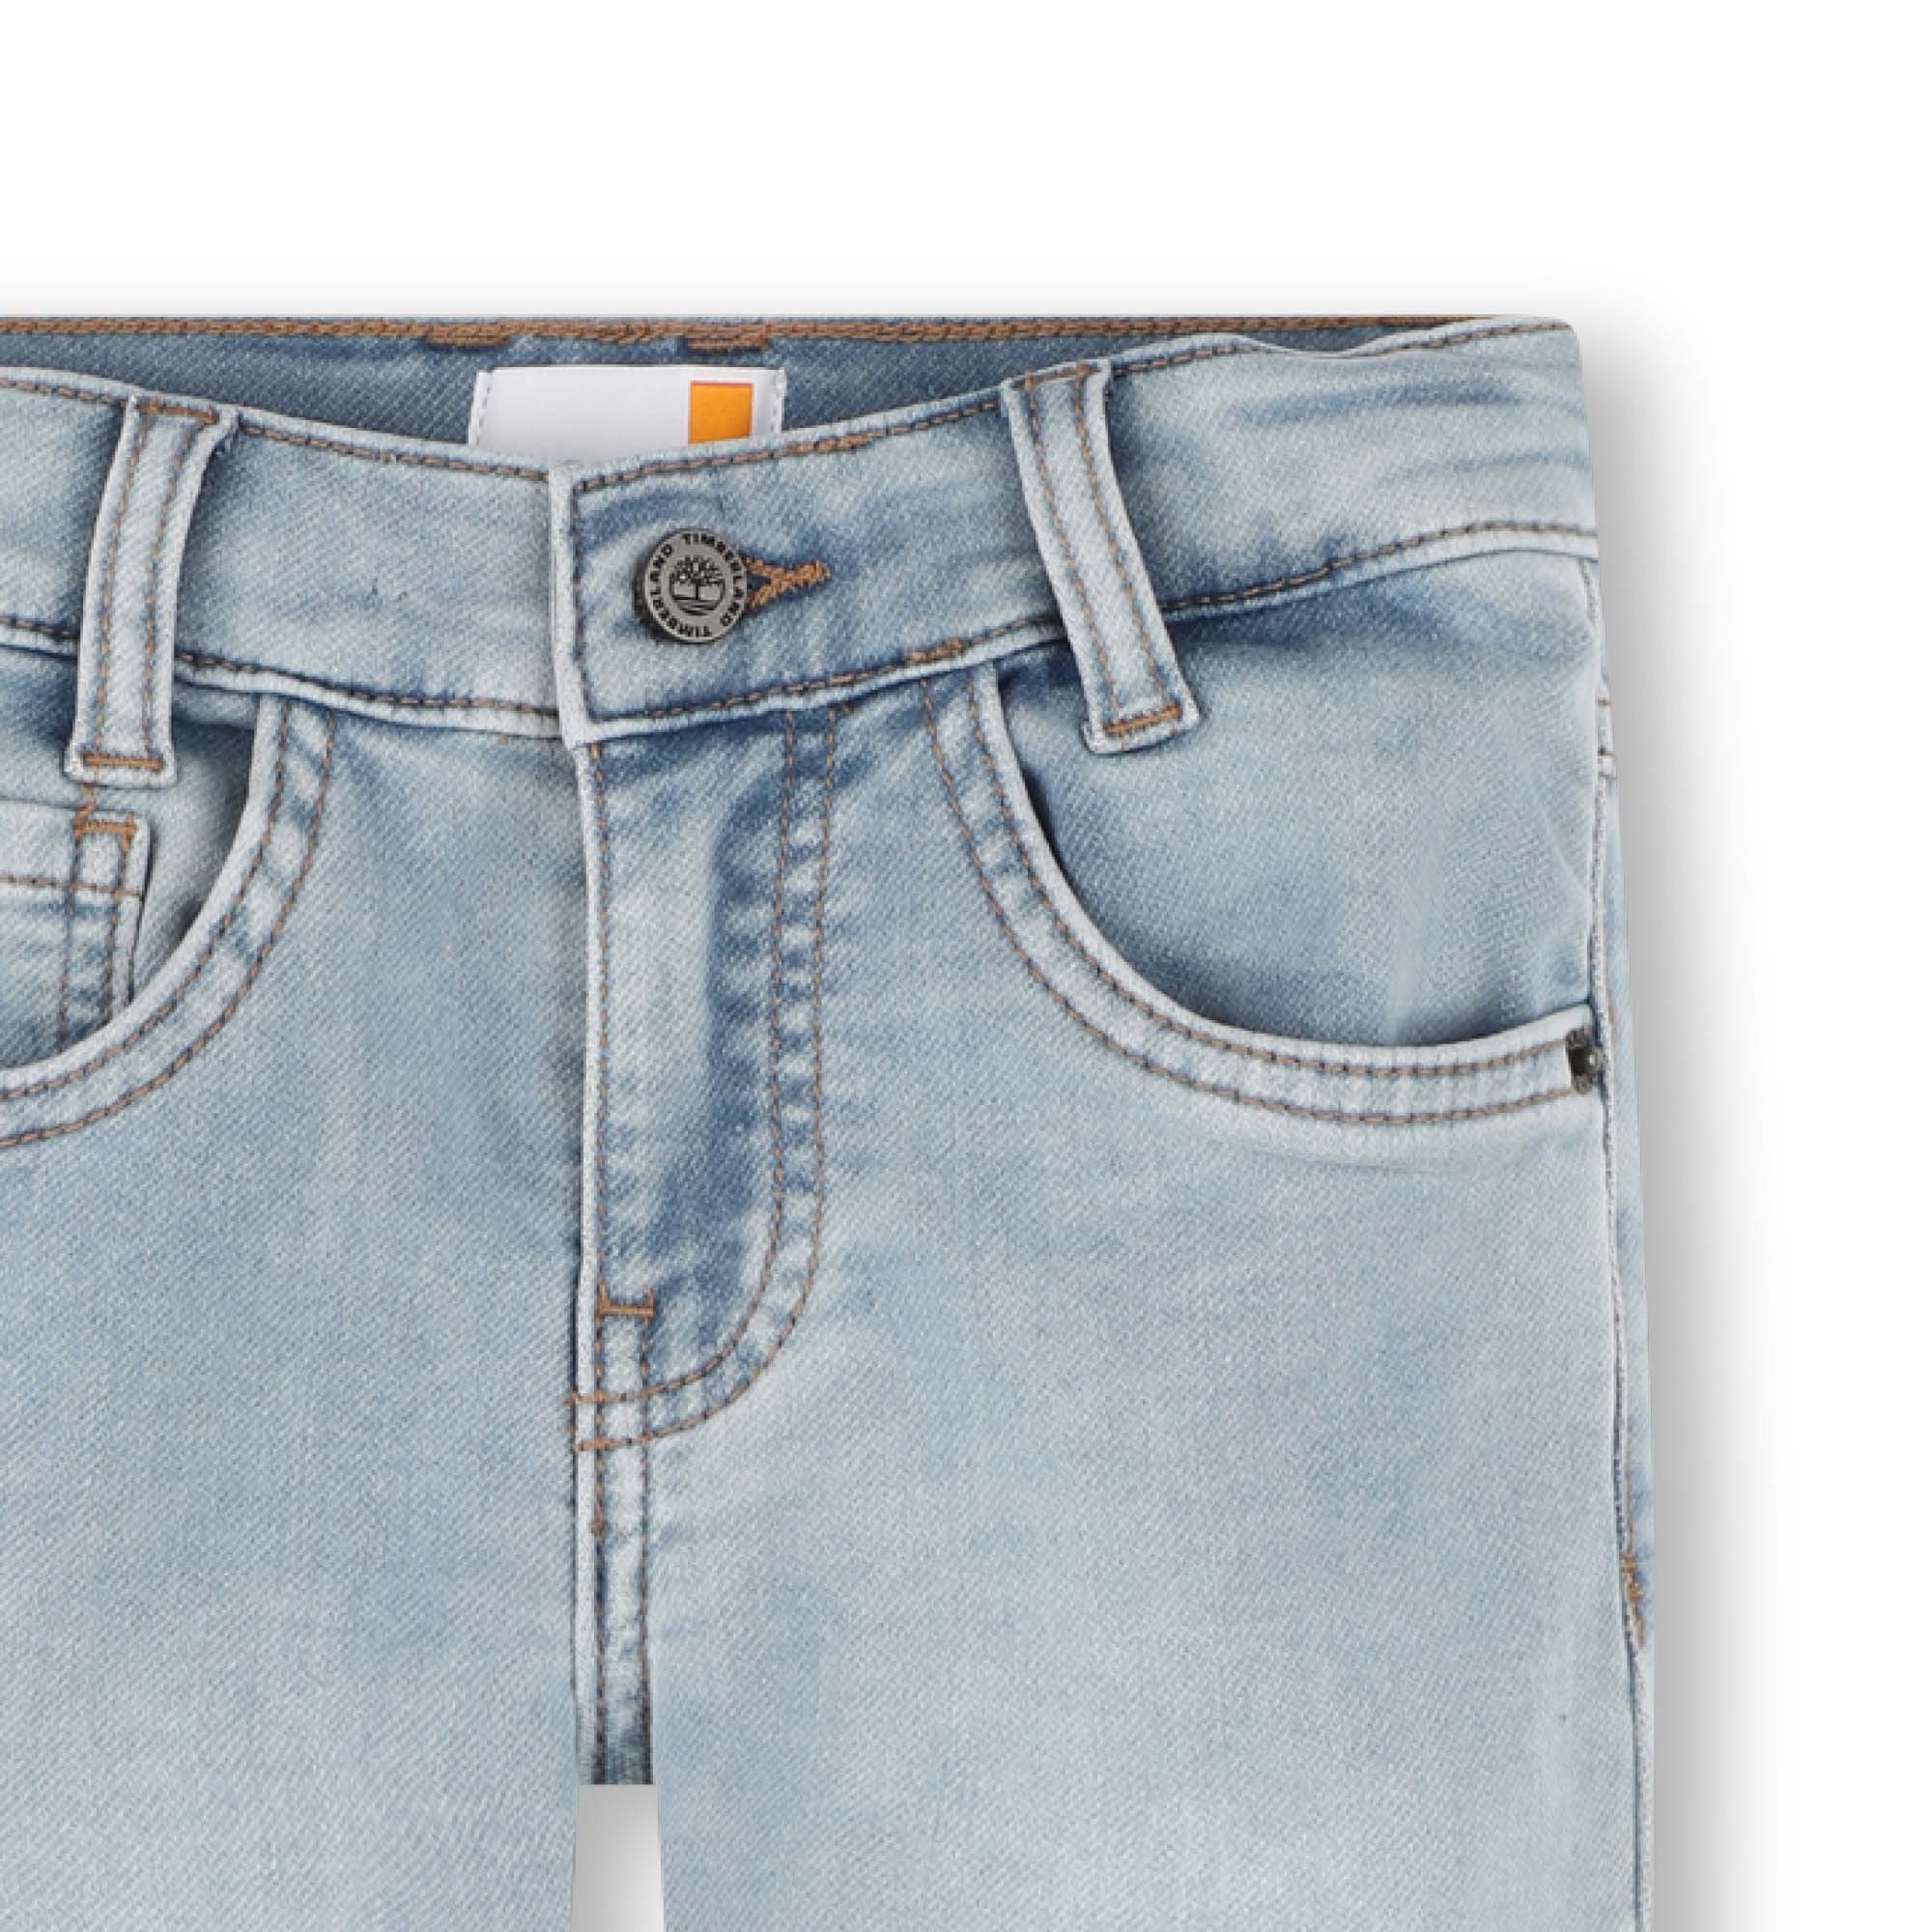 Jeans slim fit cinque tasche TIMBERLAND Per RAGAZZO